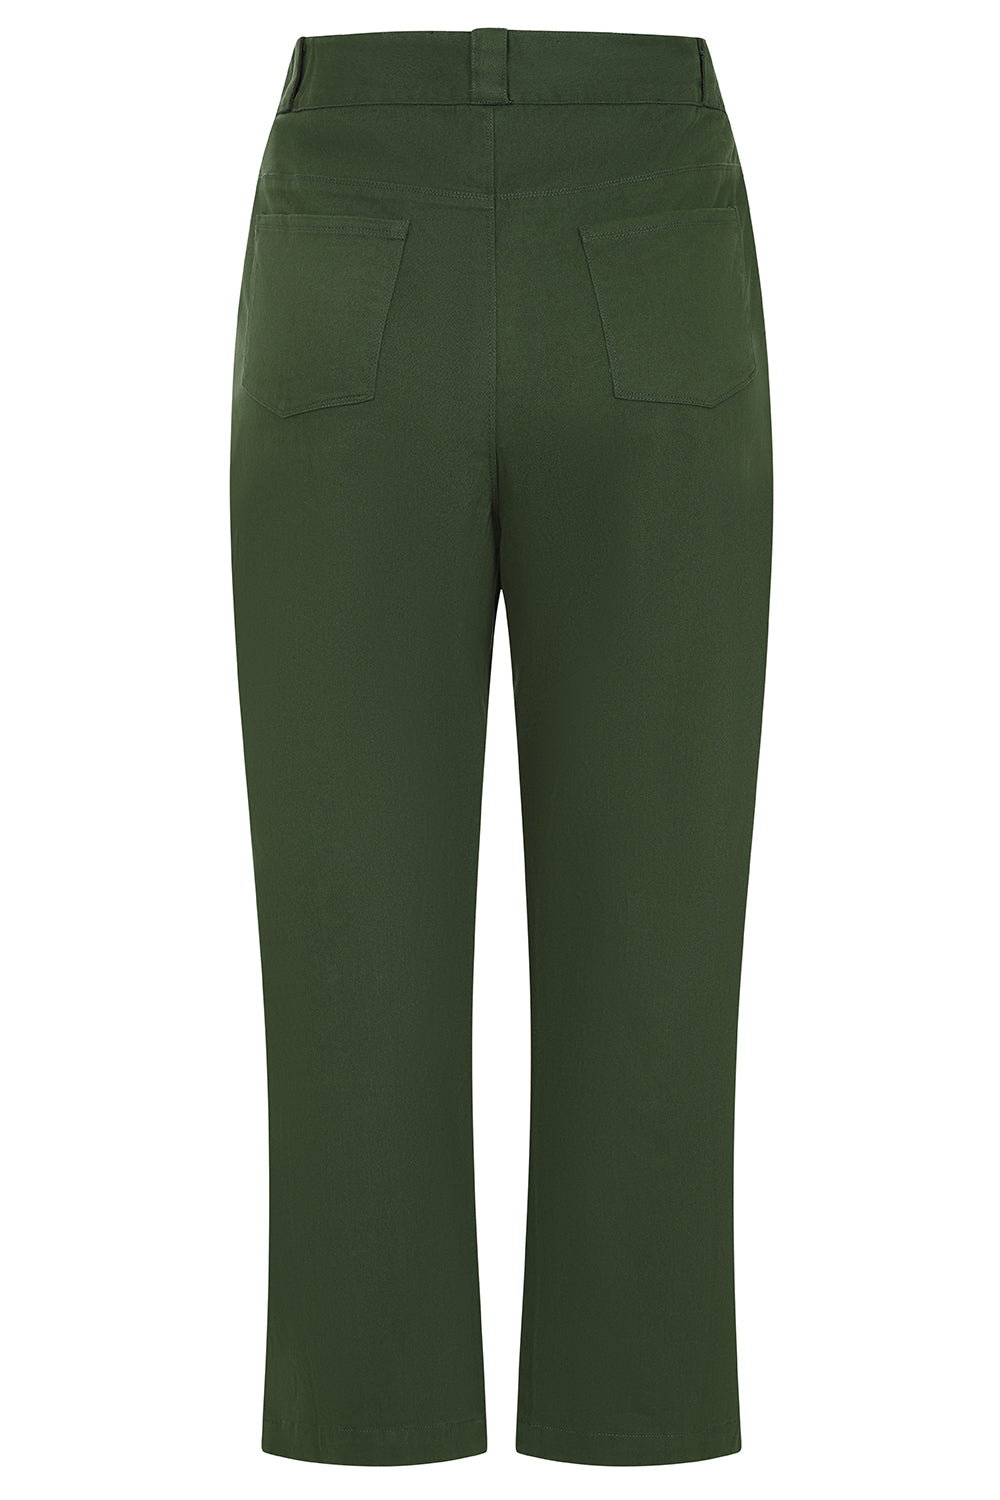 Caraway Pant - Green - Organic Cotton Jean